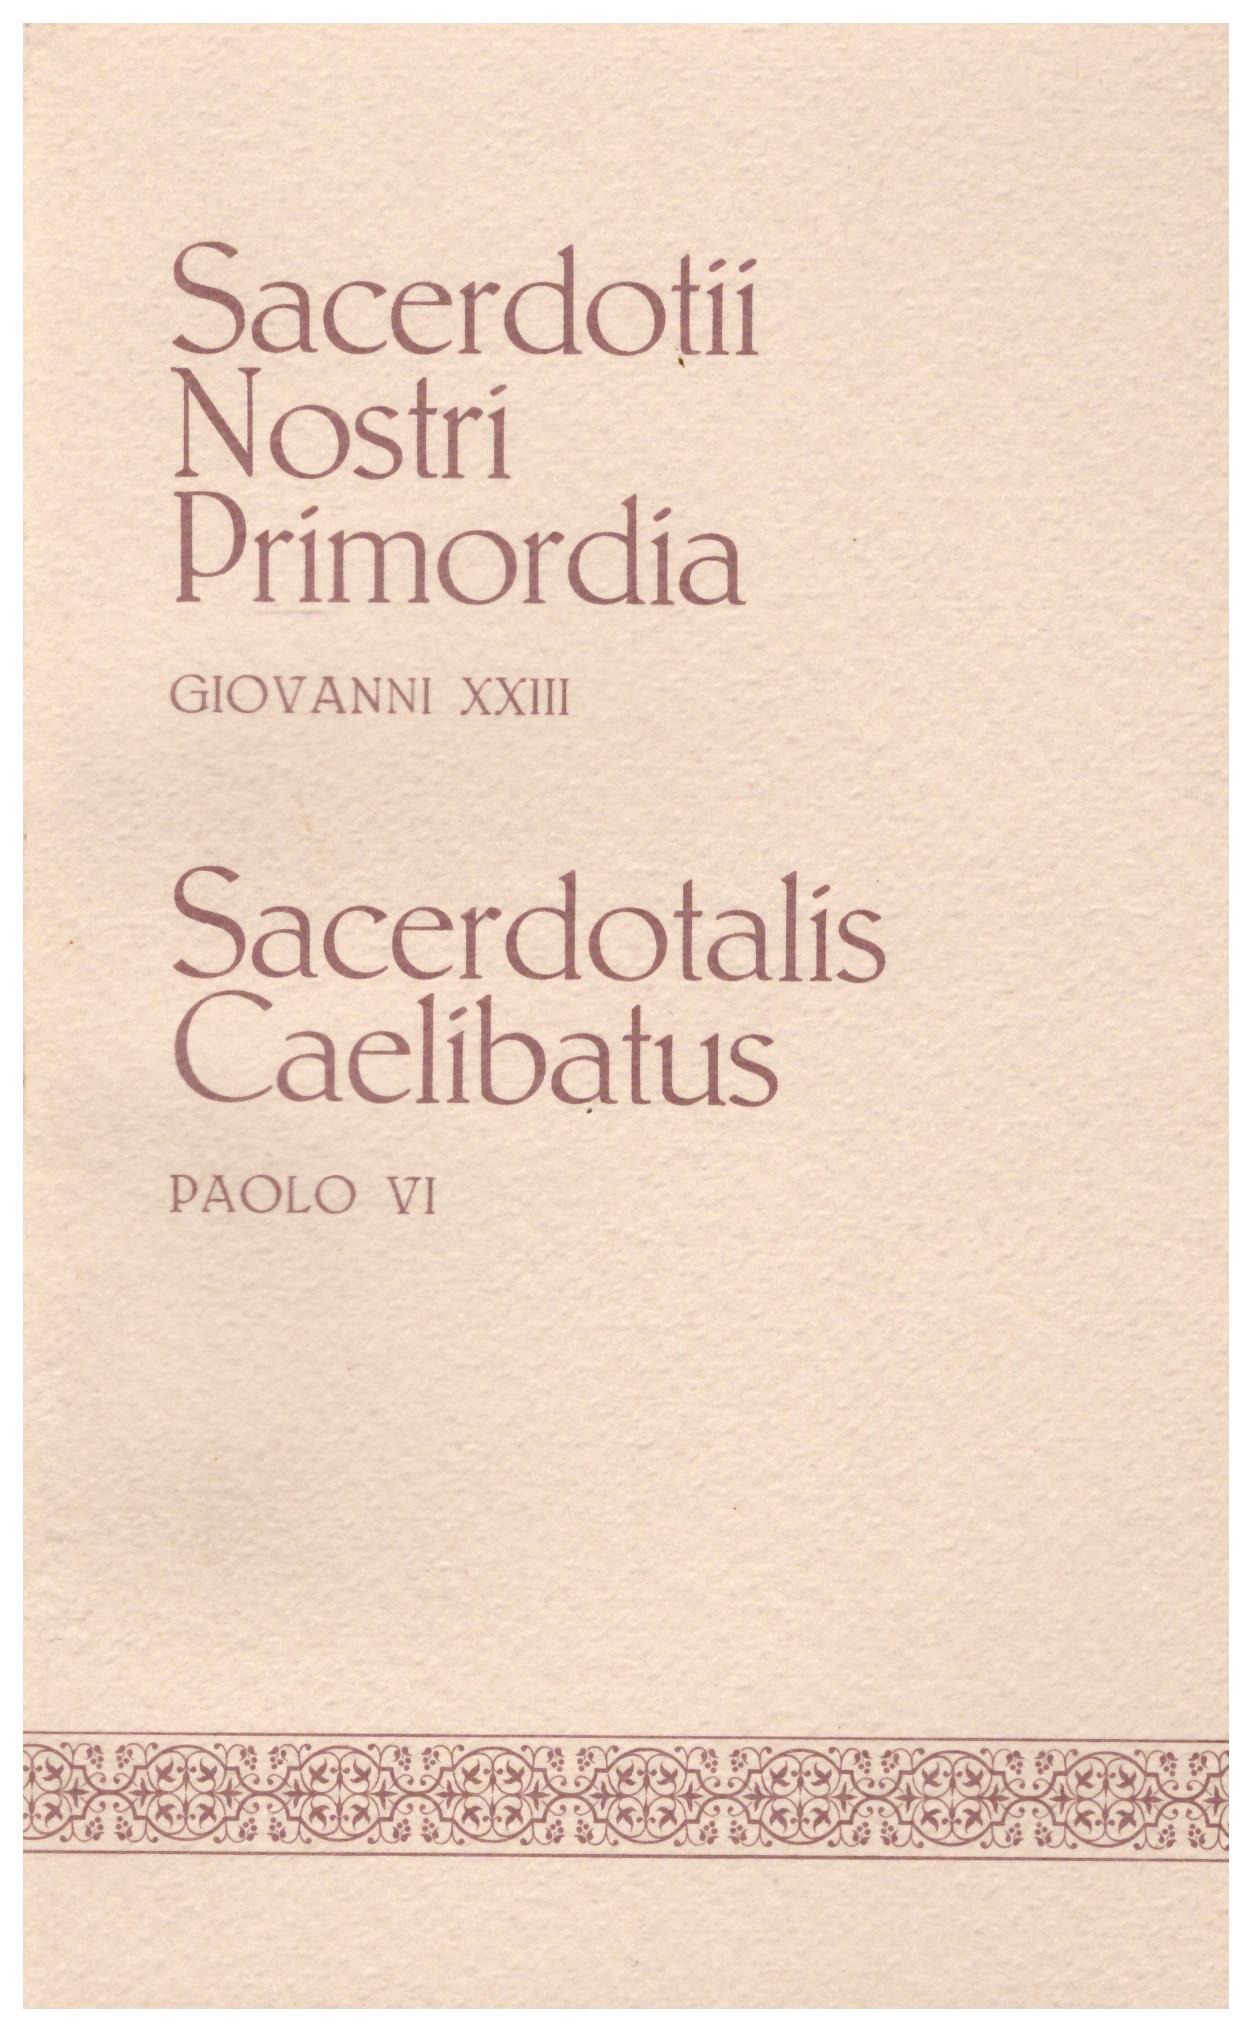 Titolo:  Sacerdotii nostri primordia, Sacerdotibus caelibatus, volume 4    Autore: Giovanni XXIII, Paolo V    Editore: famiglia dell'ave maria